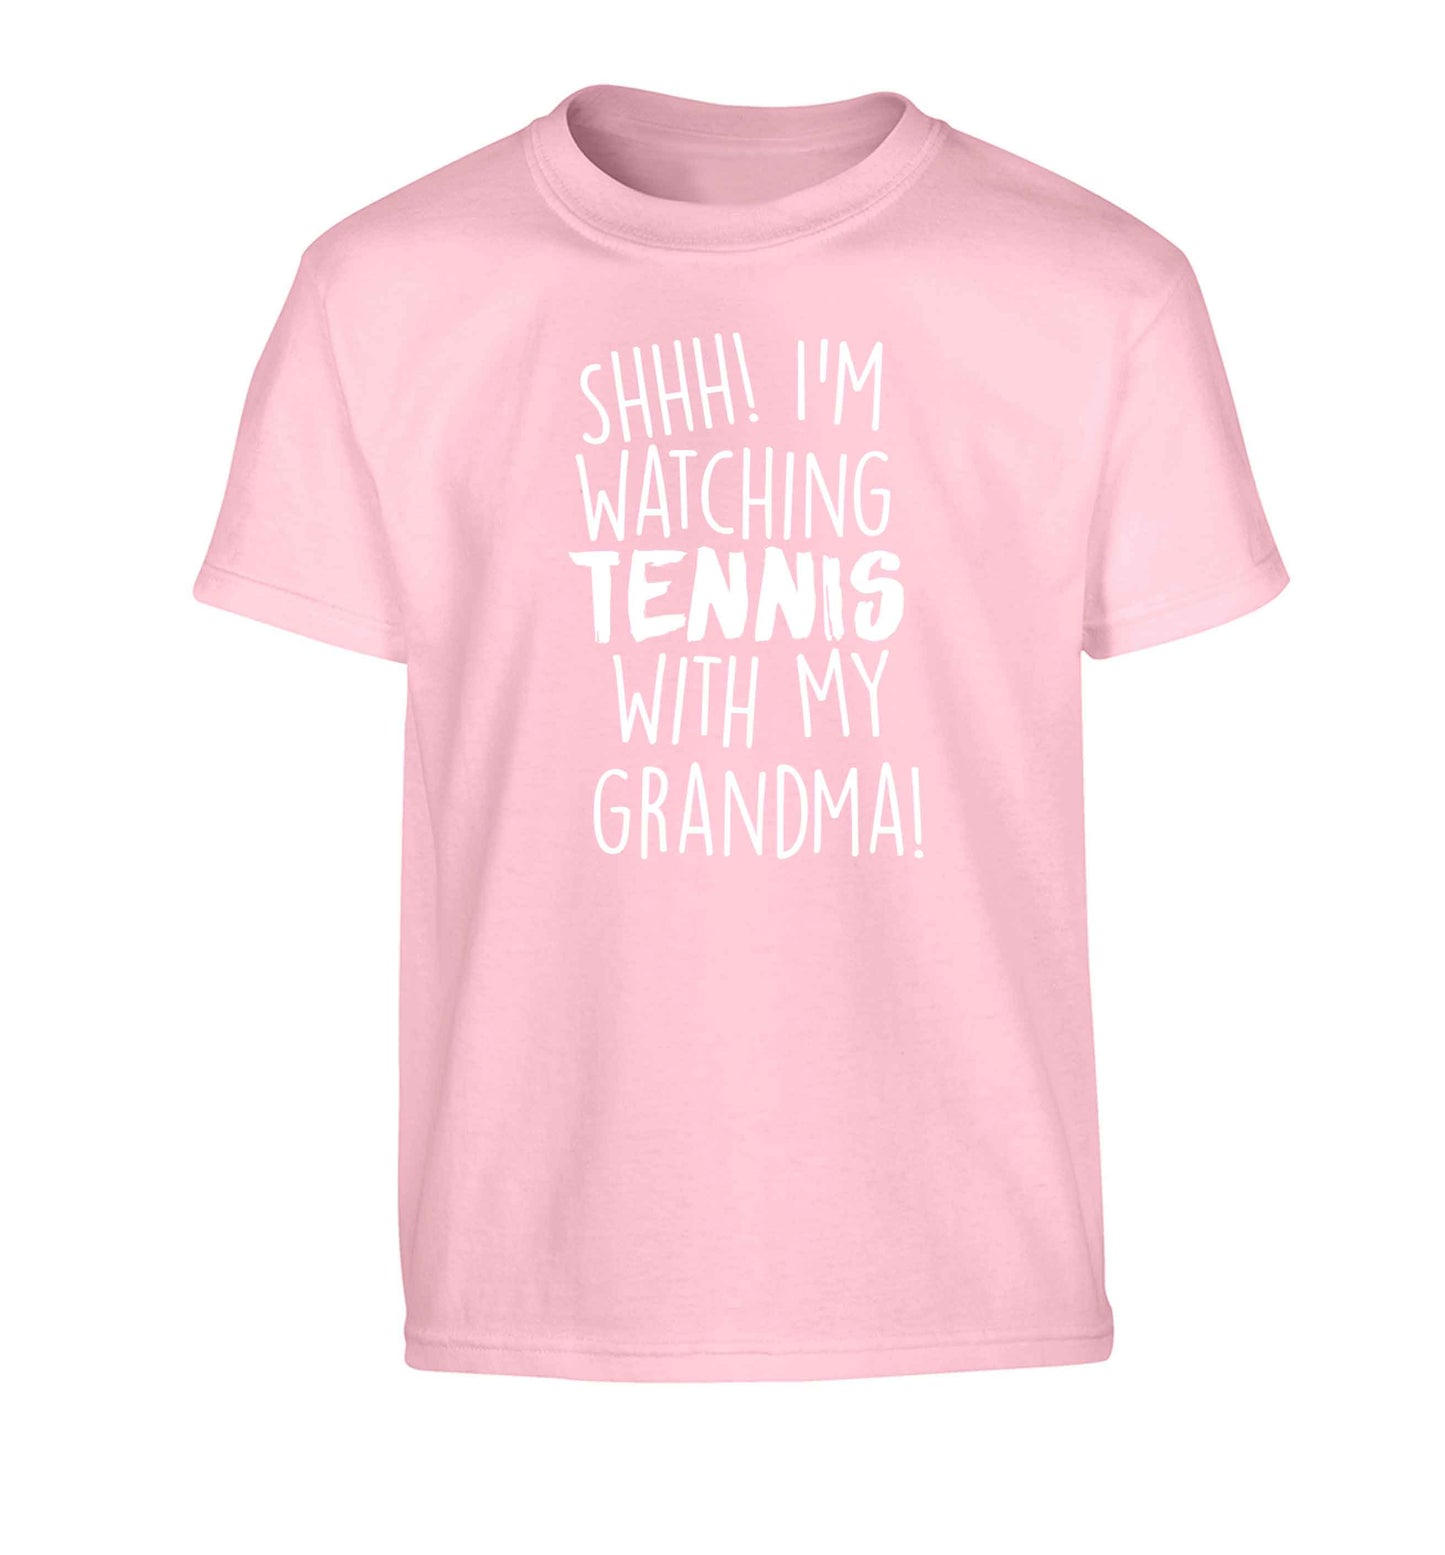 Shh! I'm watching tennis with my grandma! Children's light pink Tshirt 12-13 Years